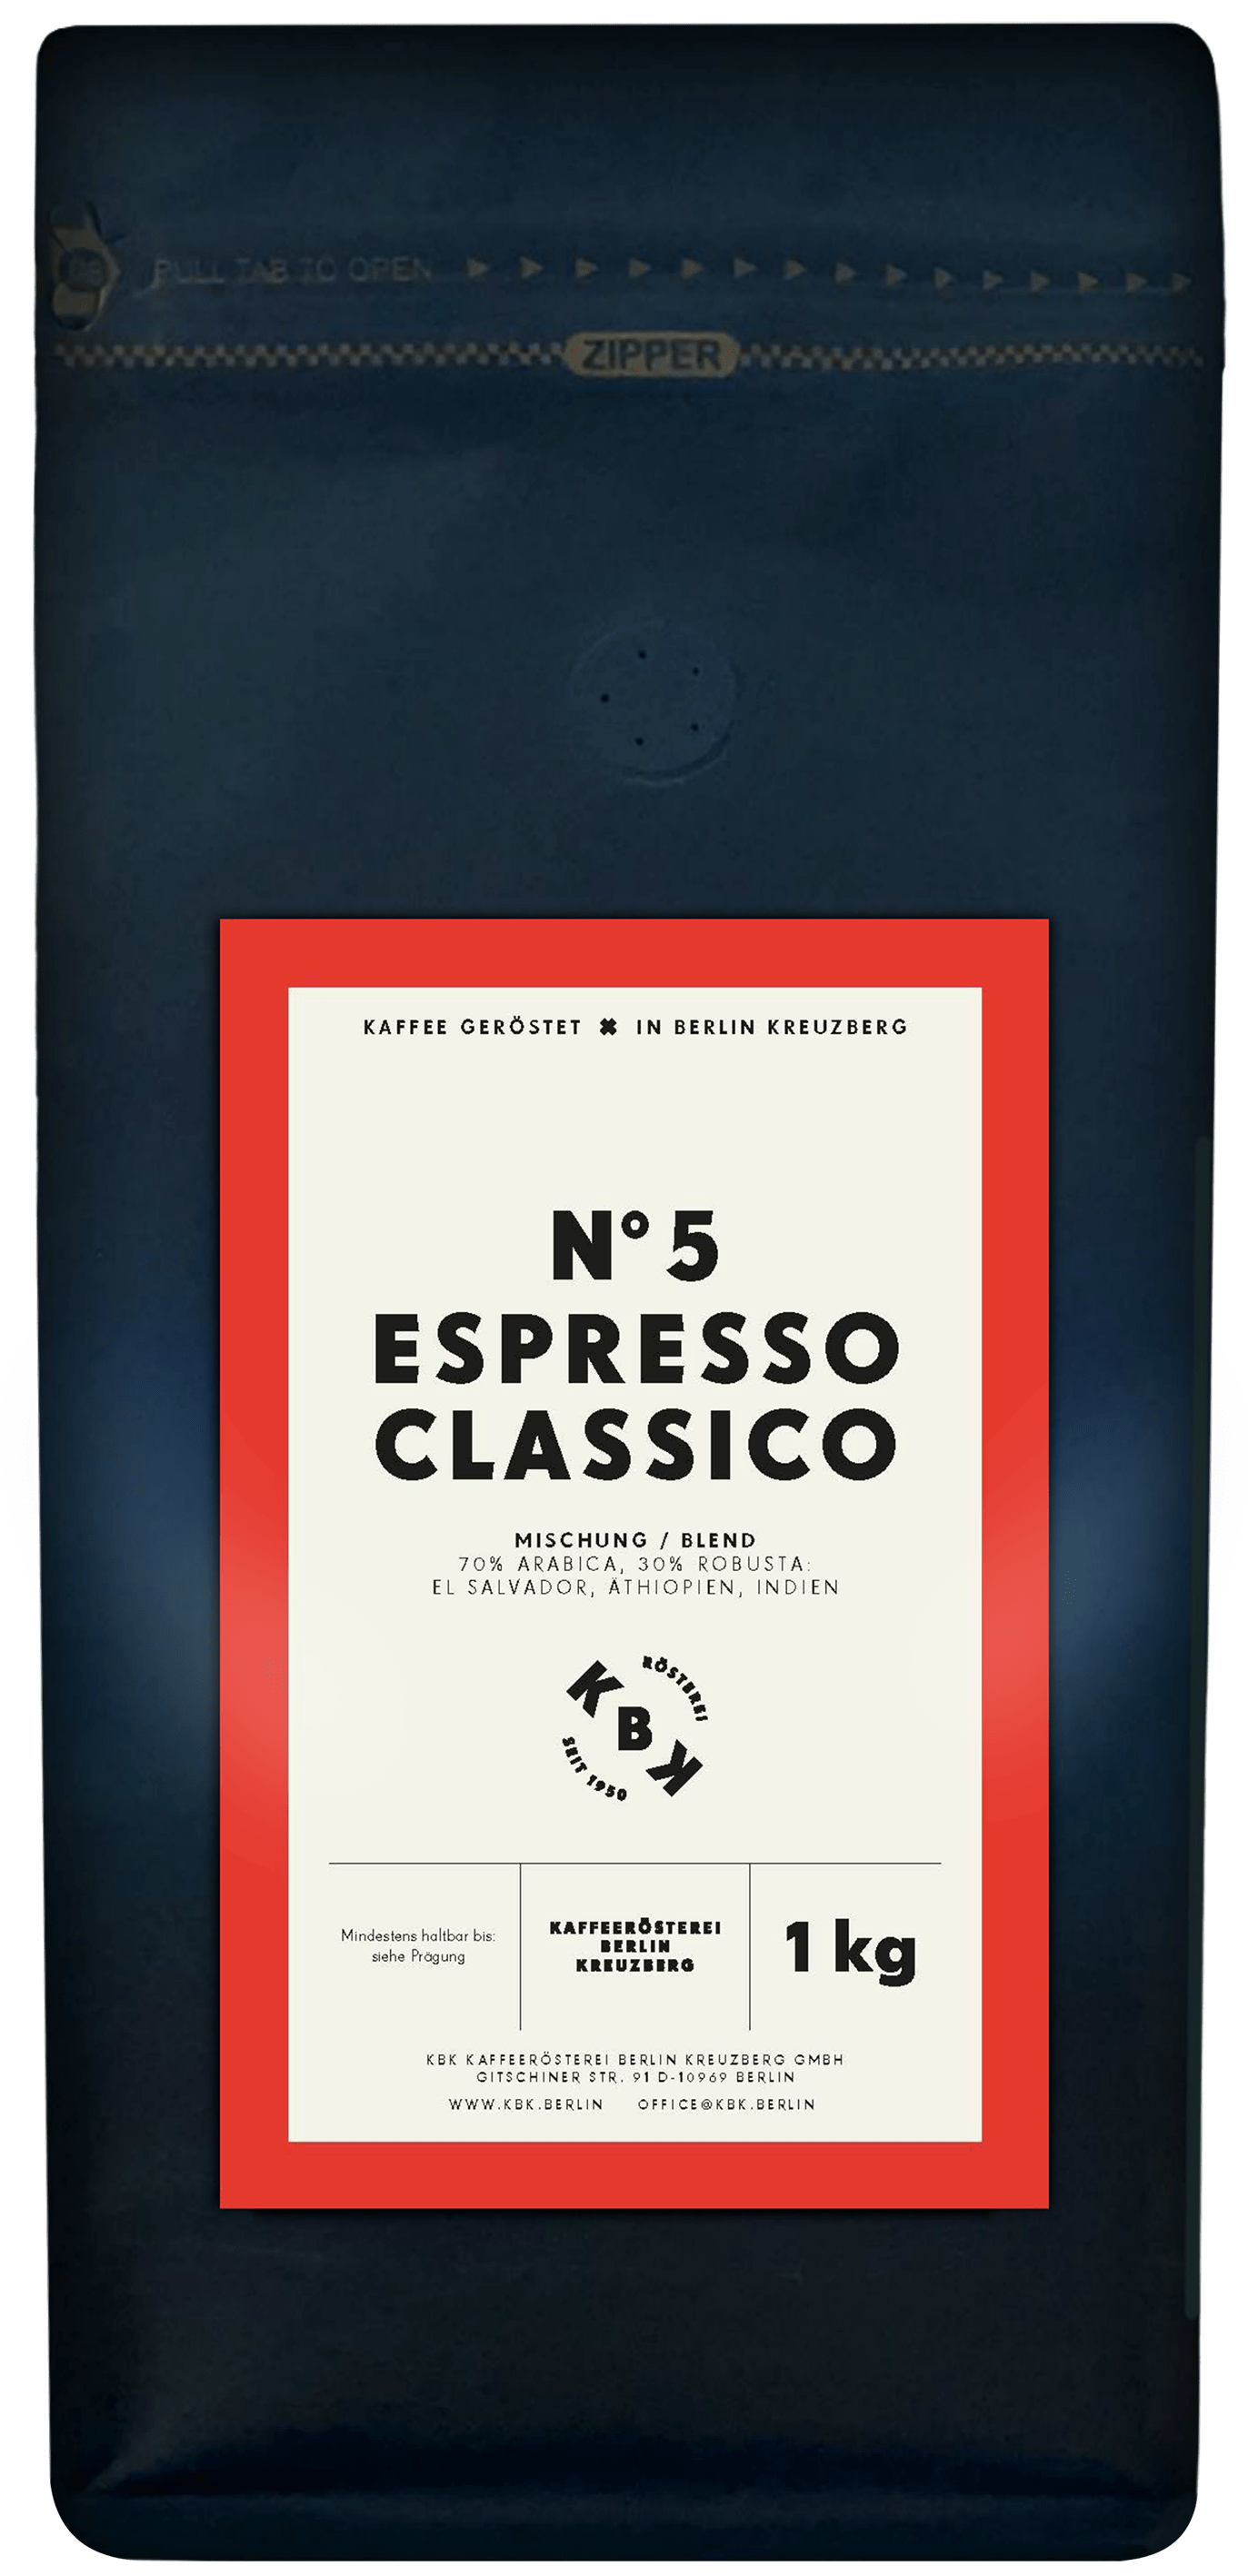 N°5 Espresso Classico